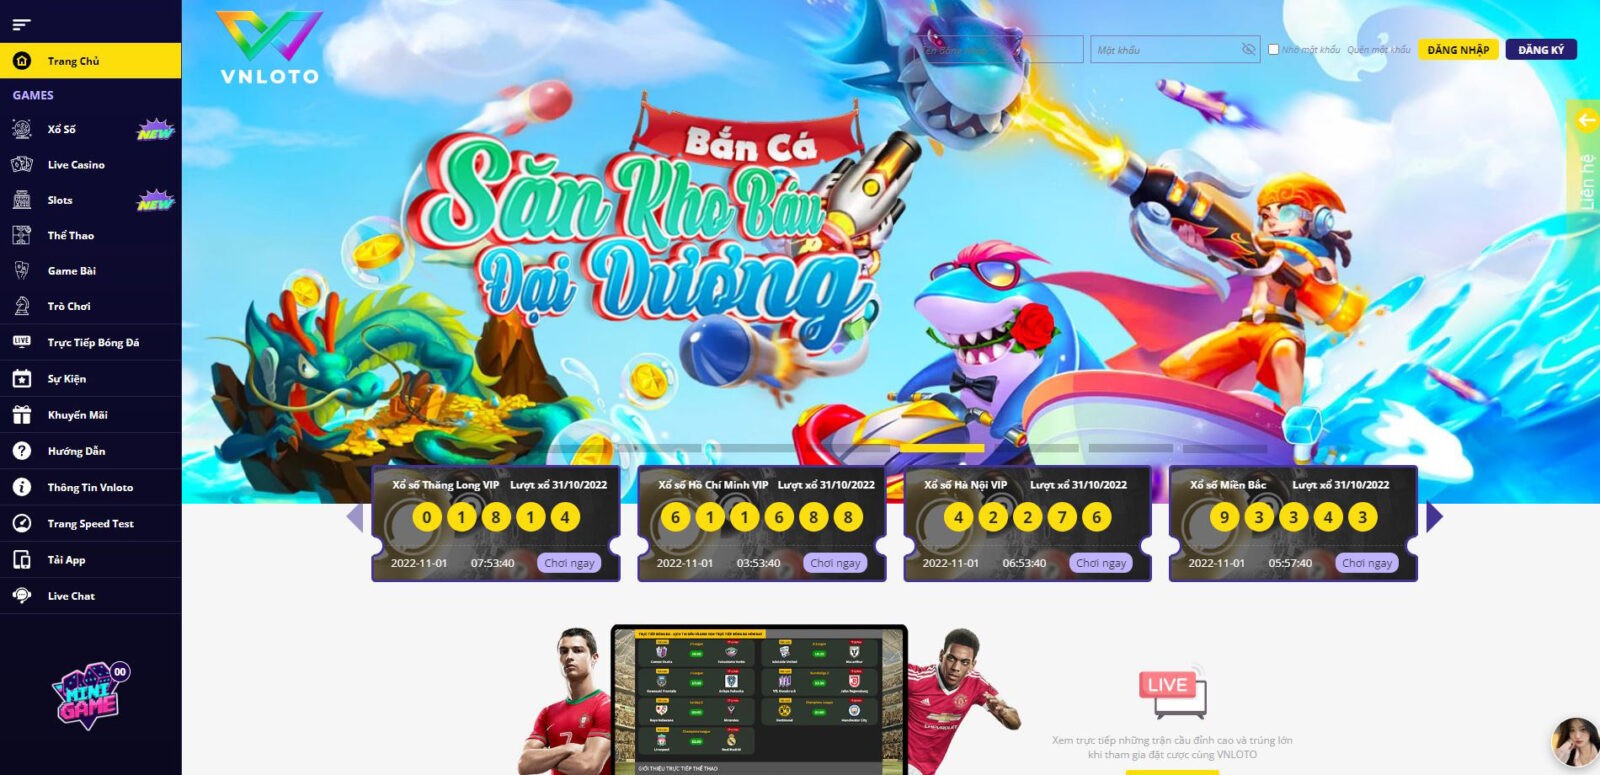 Casino online vnloto - Sân chơi cá cược số 1 Việt Nam